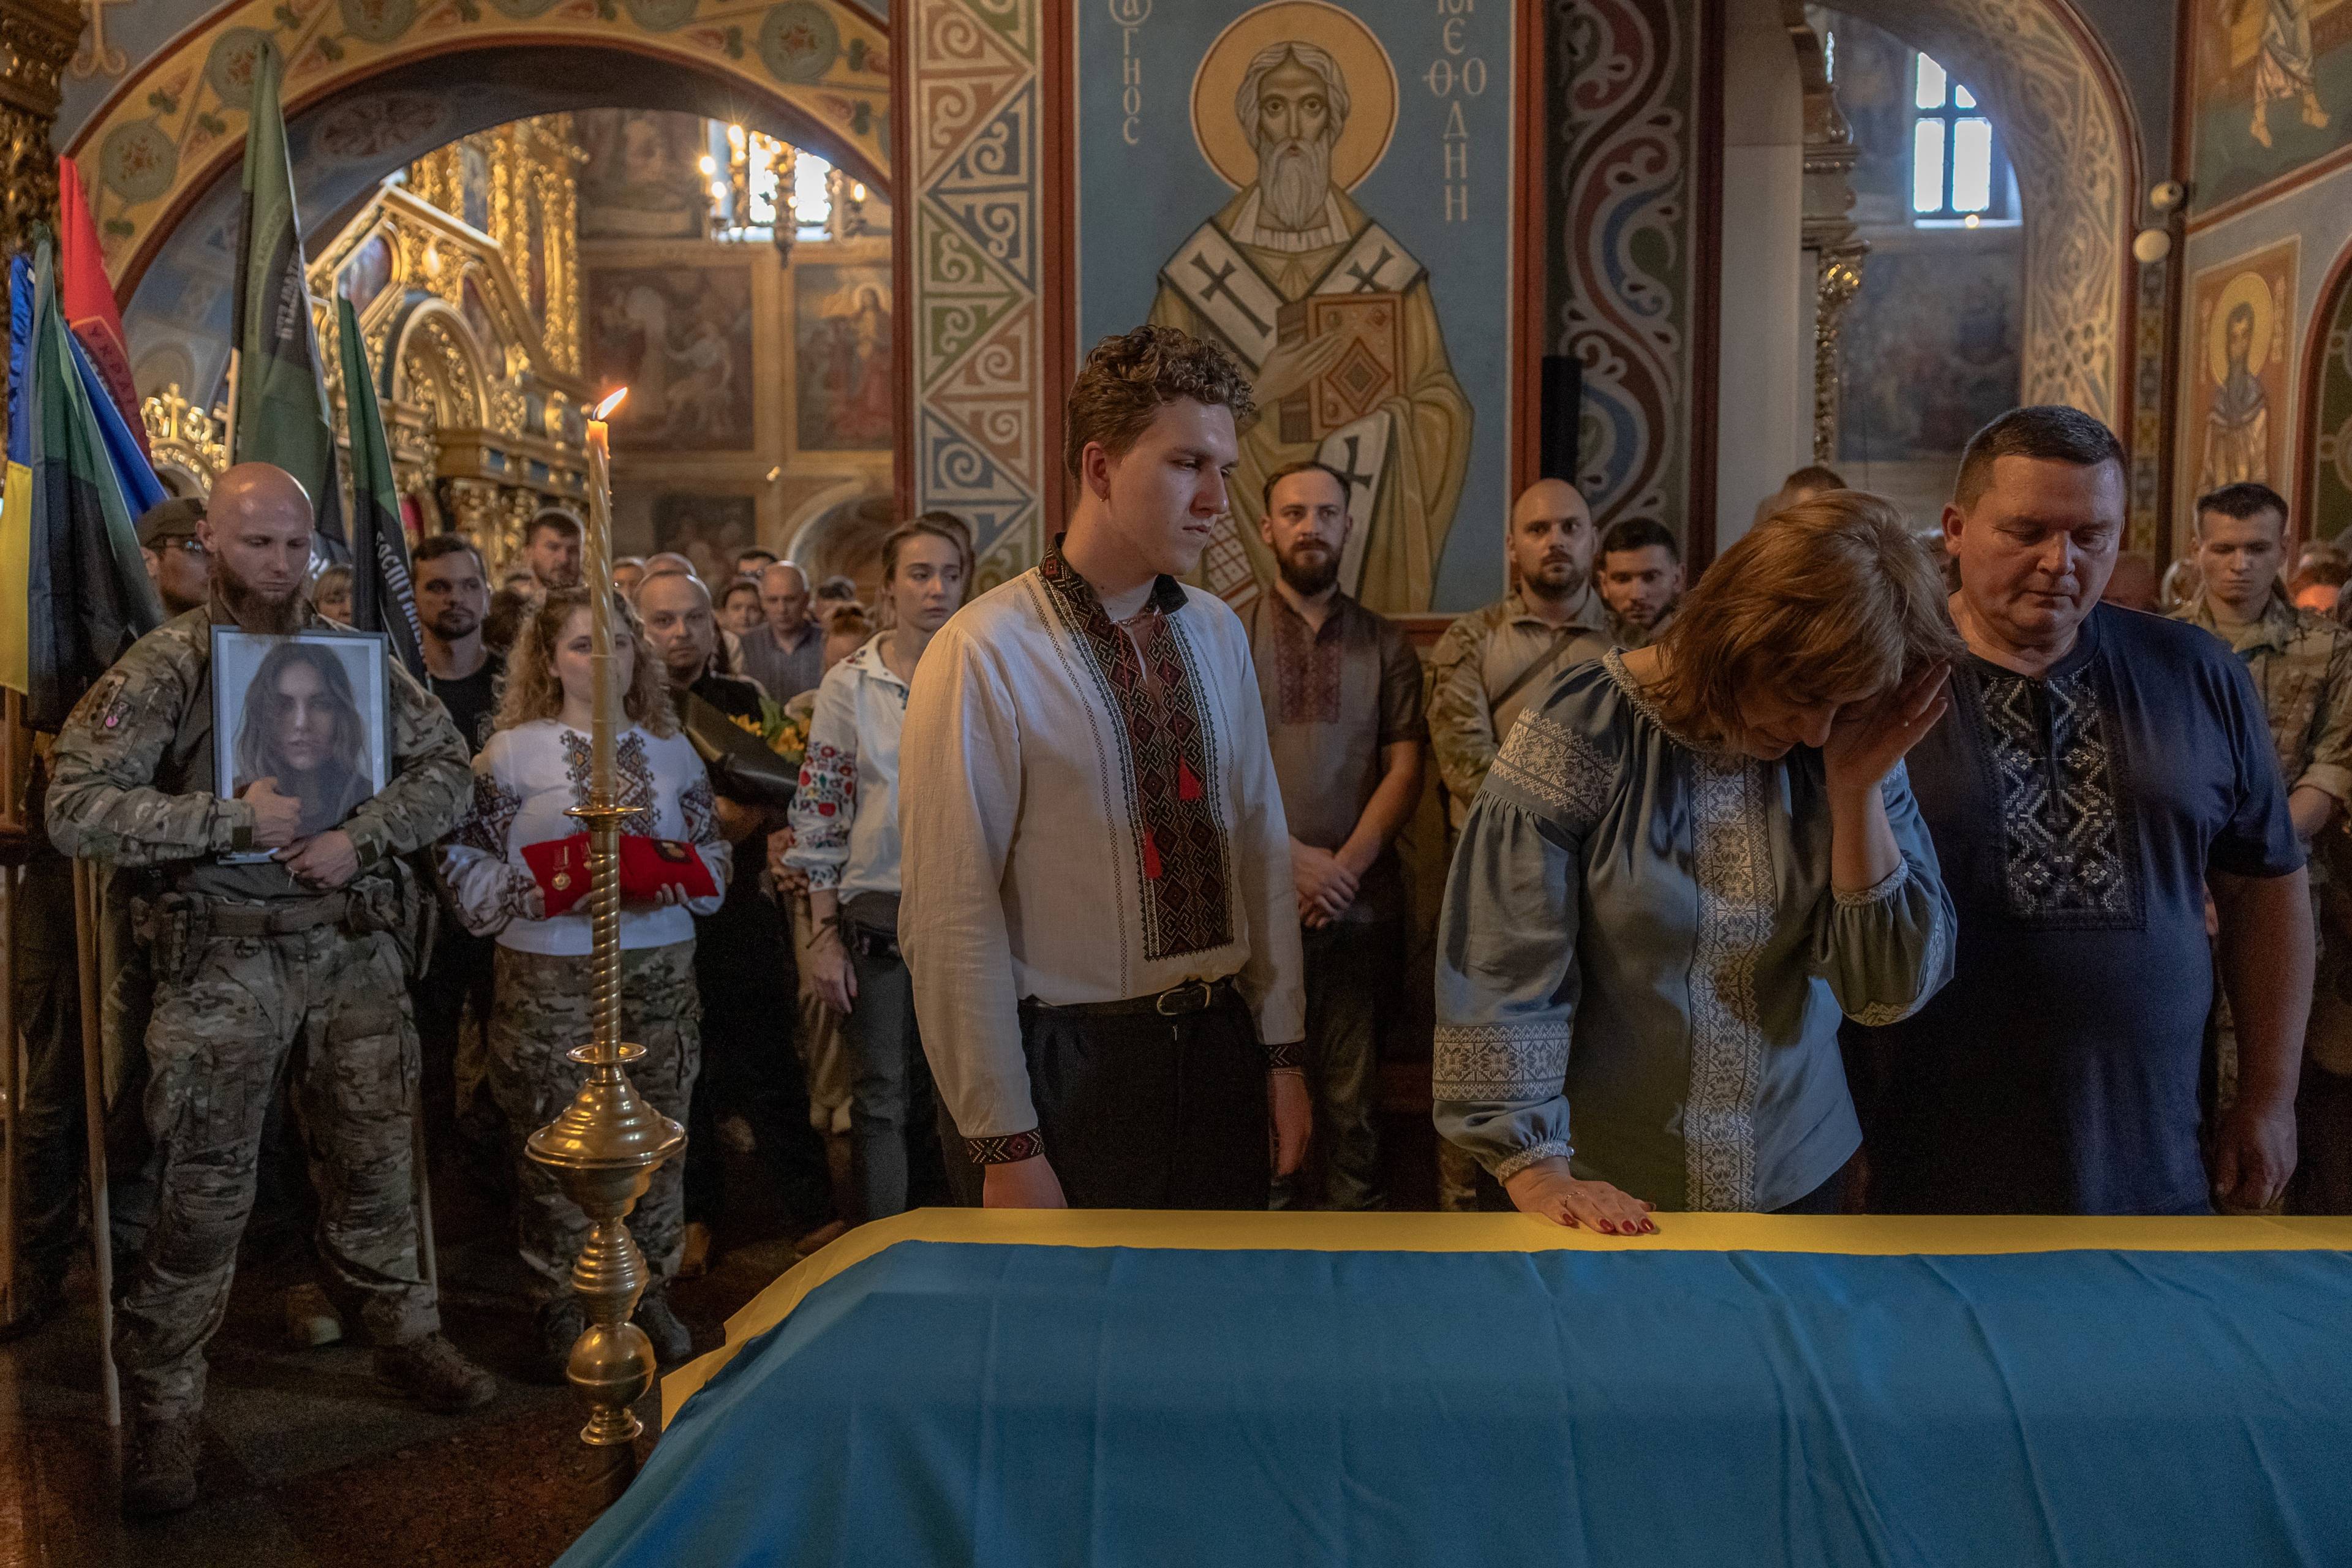 Na zdjęciu w cerkwi obok trumny przykrytej flagą żółto-niebieską stoi rodzina Iryny Cybuch: brat Jurij z matką oraz ojcem. Są w koszulach wyszywanych. W tle są inni ludzie